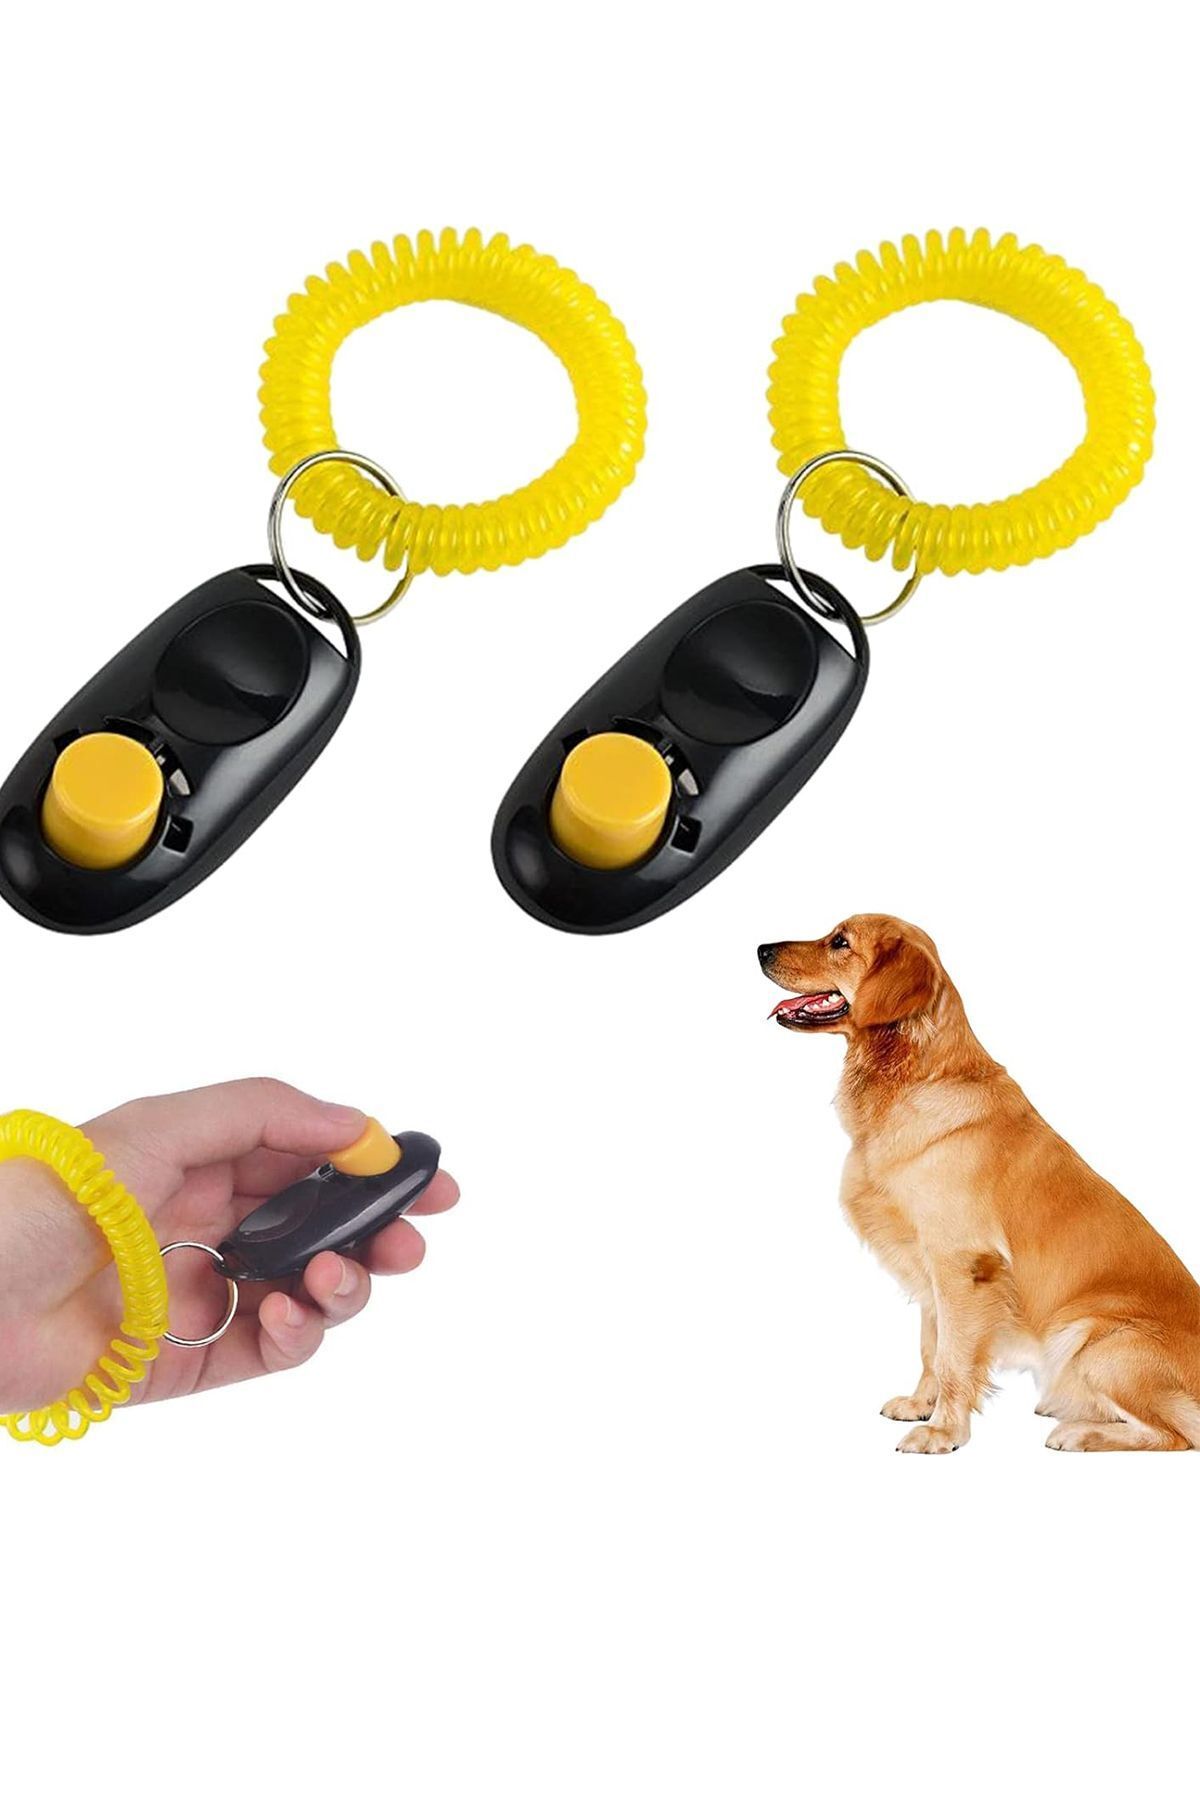 Factorial Küçük Irk Köpek Eğitim Ürünü Eğitim Tasması Köpek Çağırıcı Uyarıcı Anahtarlık Clicker Köpek Ürünleri